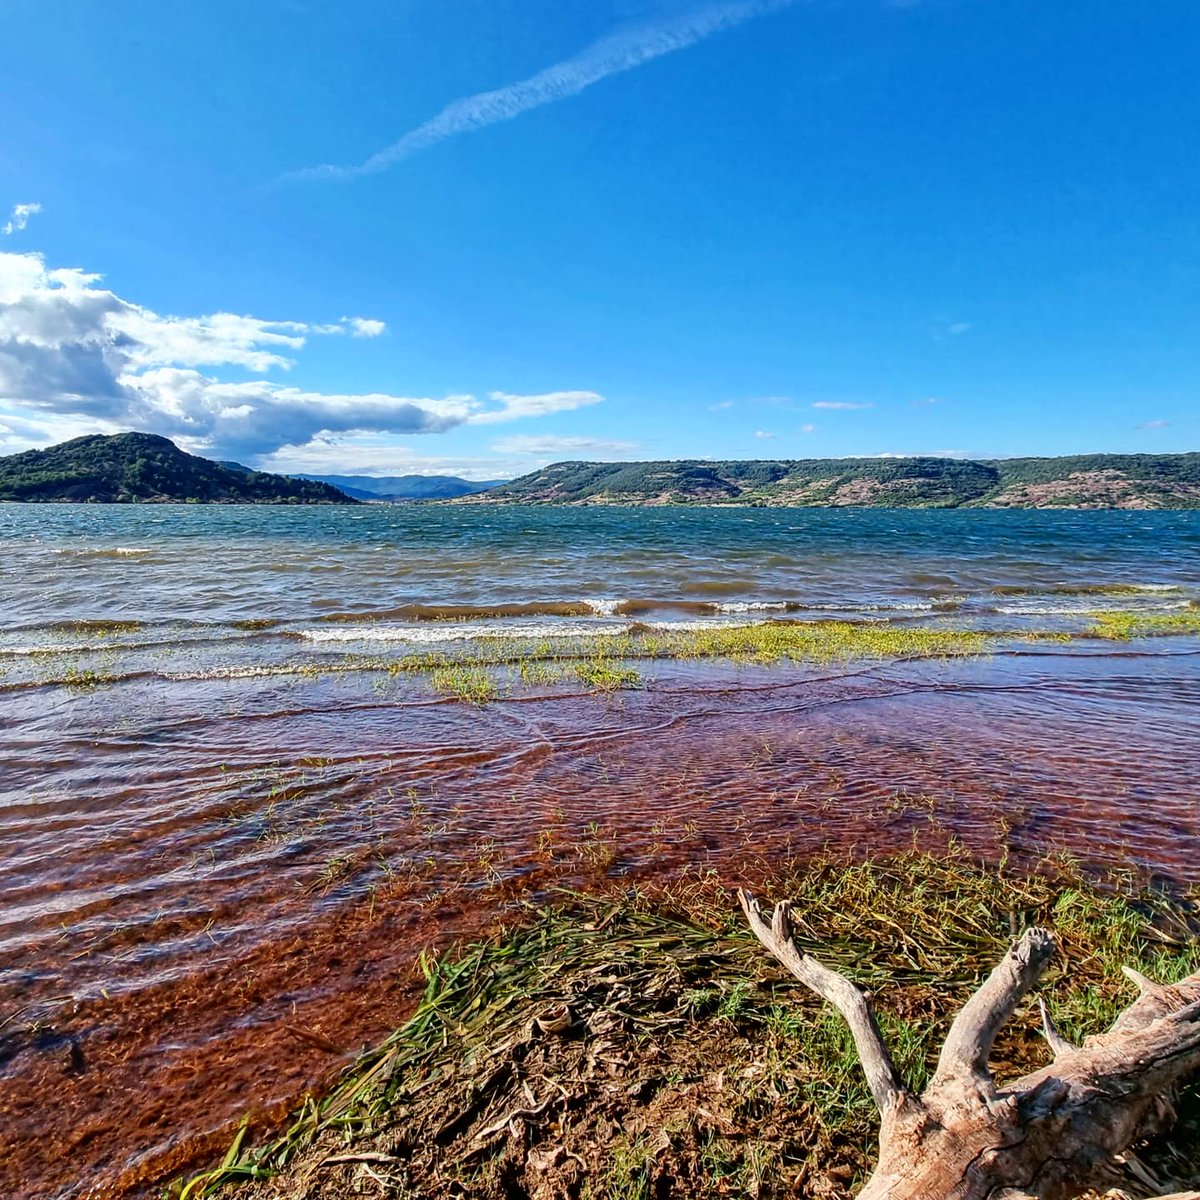 Els colors del Lac du Salagou (Lac de Salagon, en occità). #lacdusalagou #lacdesalagon #hérault #erau #occitanie #occitània #bicicleta #gravel #estiu2021